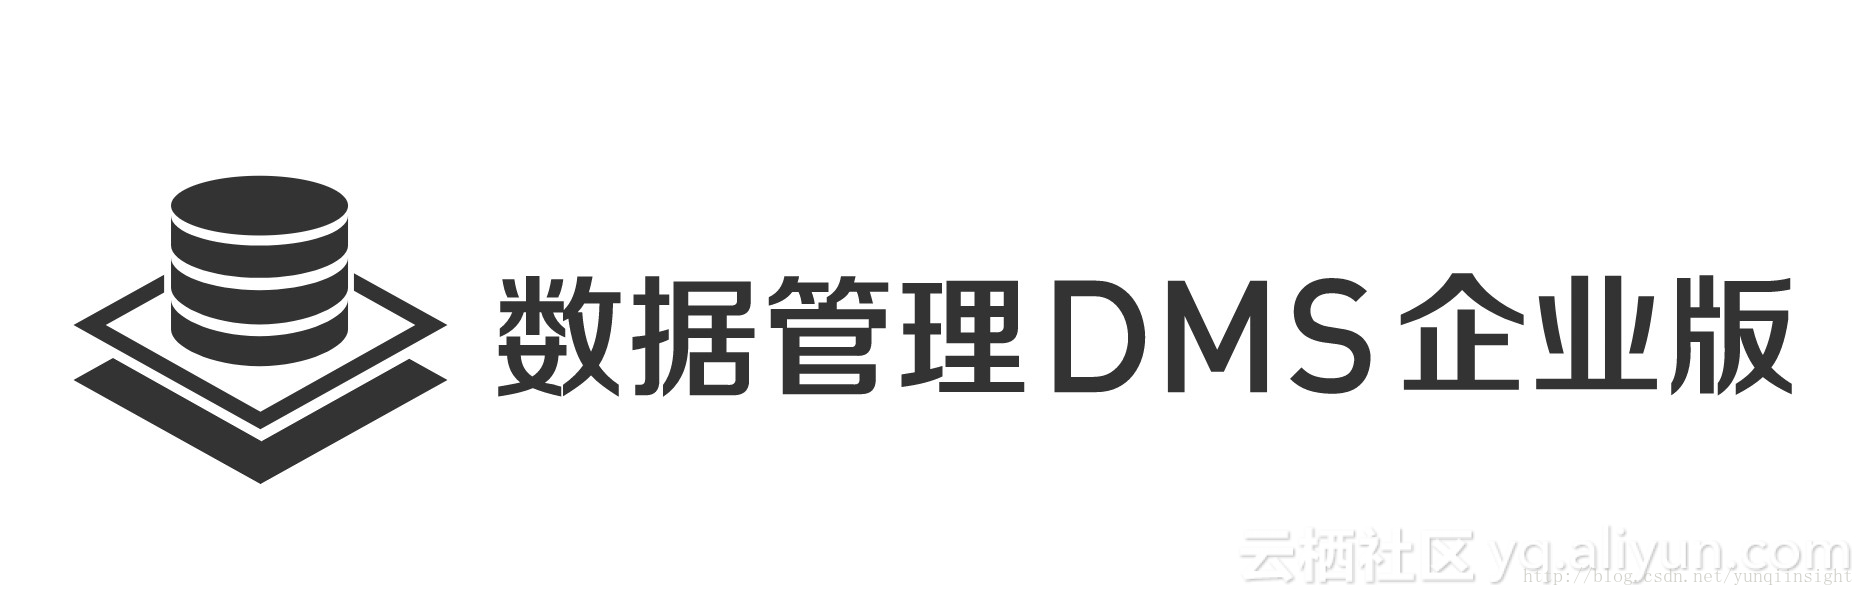 提升研发效率 保障数据安全——阿里云宣布数据管理DMS企业版正式商业化